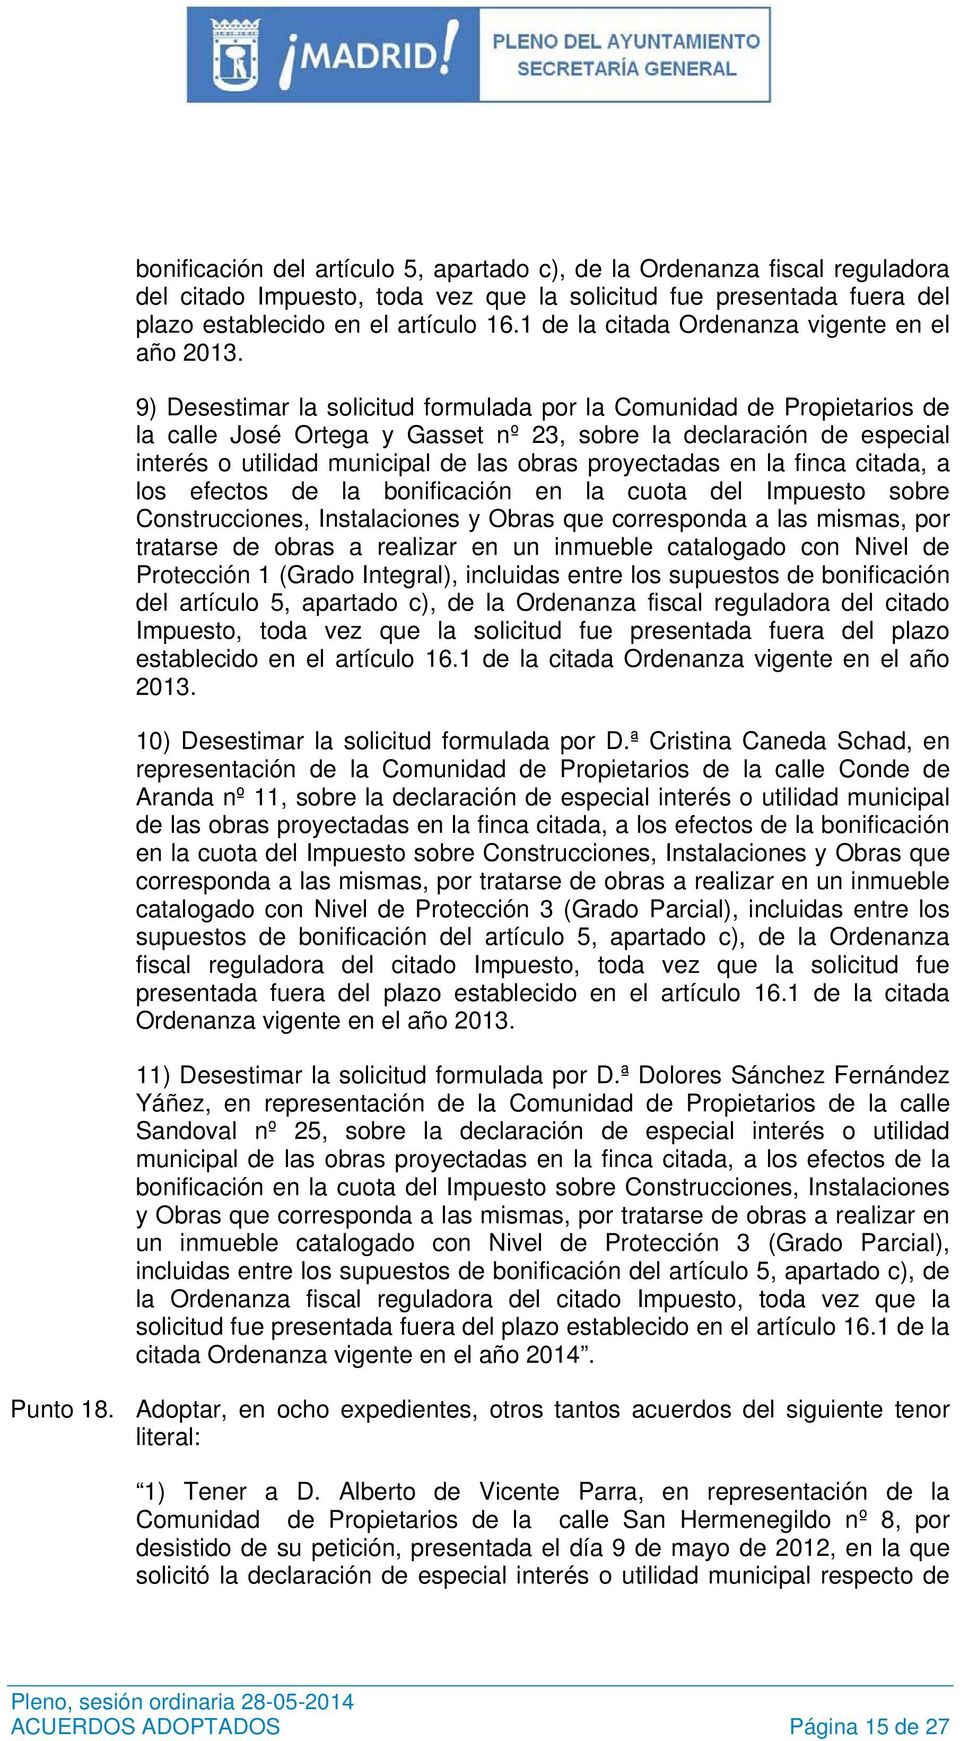 9) Desestimar la solicitud formulada por la Comunidad de Propietarios de la calle José Ortega y Gasset nº 23, sobre la declaración de especial interés o utilidad municipal de las obras proyectadas en